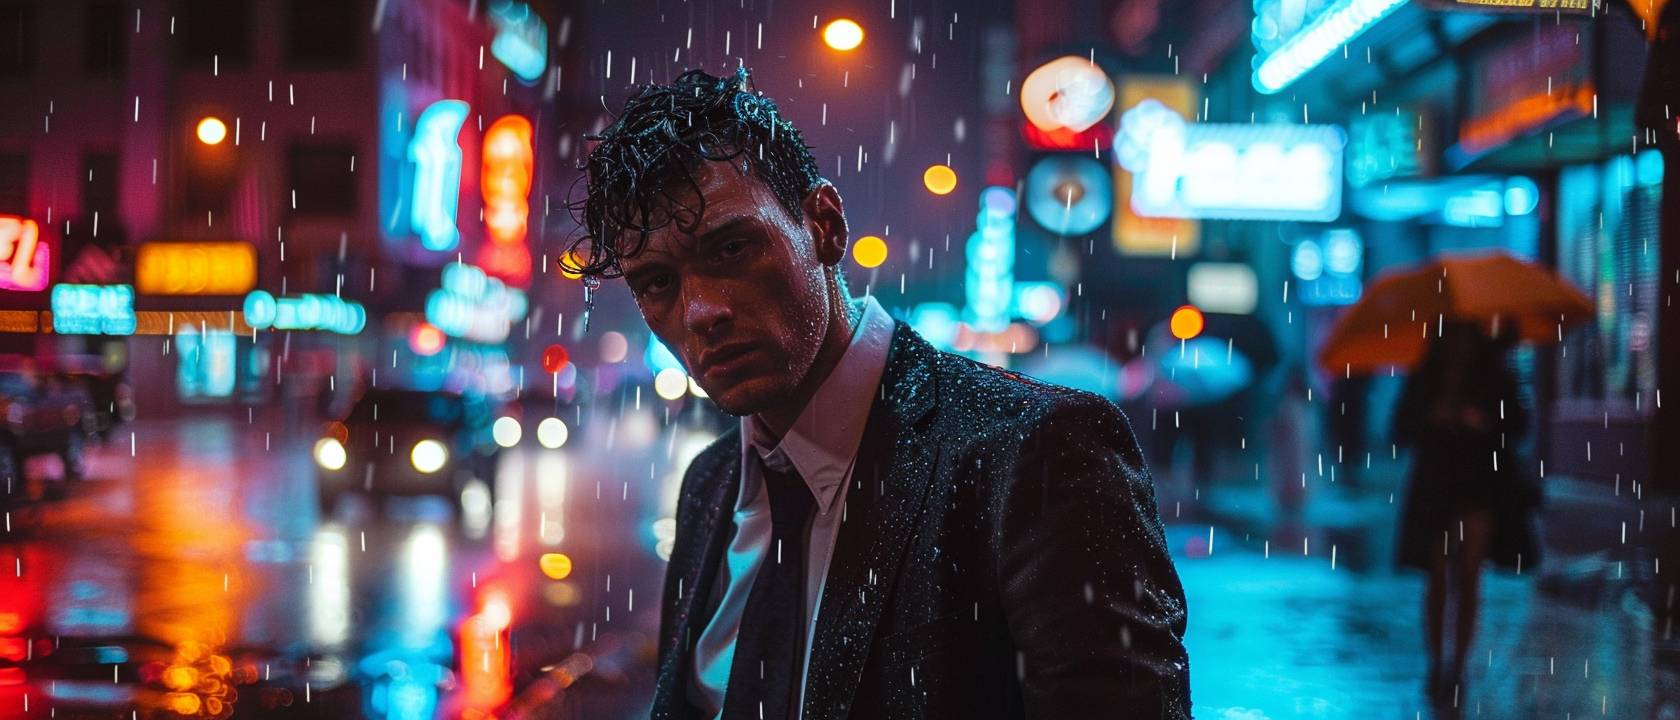 スーツを着た男性が雨の中で立っています。考え深い表情。濡れた髪が額に張り付いています。ダウンタウン地区。夜。ネオンサイン、通行する車、傘をさした人々。中景、上半身。劇的なライティング、街の光で照らされる雨粒、スーツから水滴が滴る。ハイダイナミックレンジ。